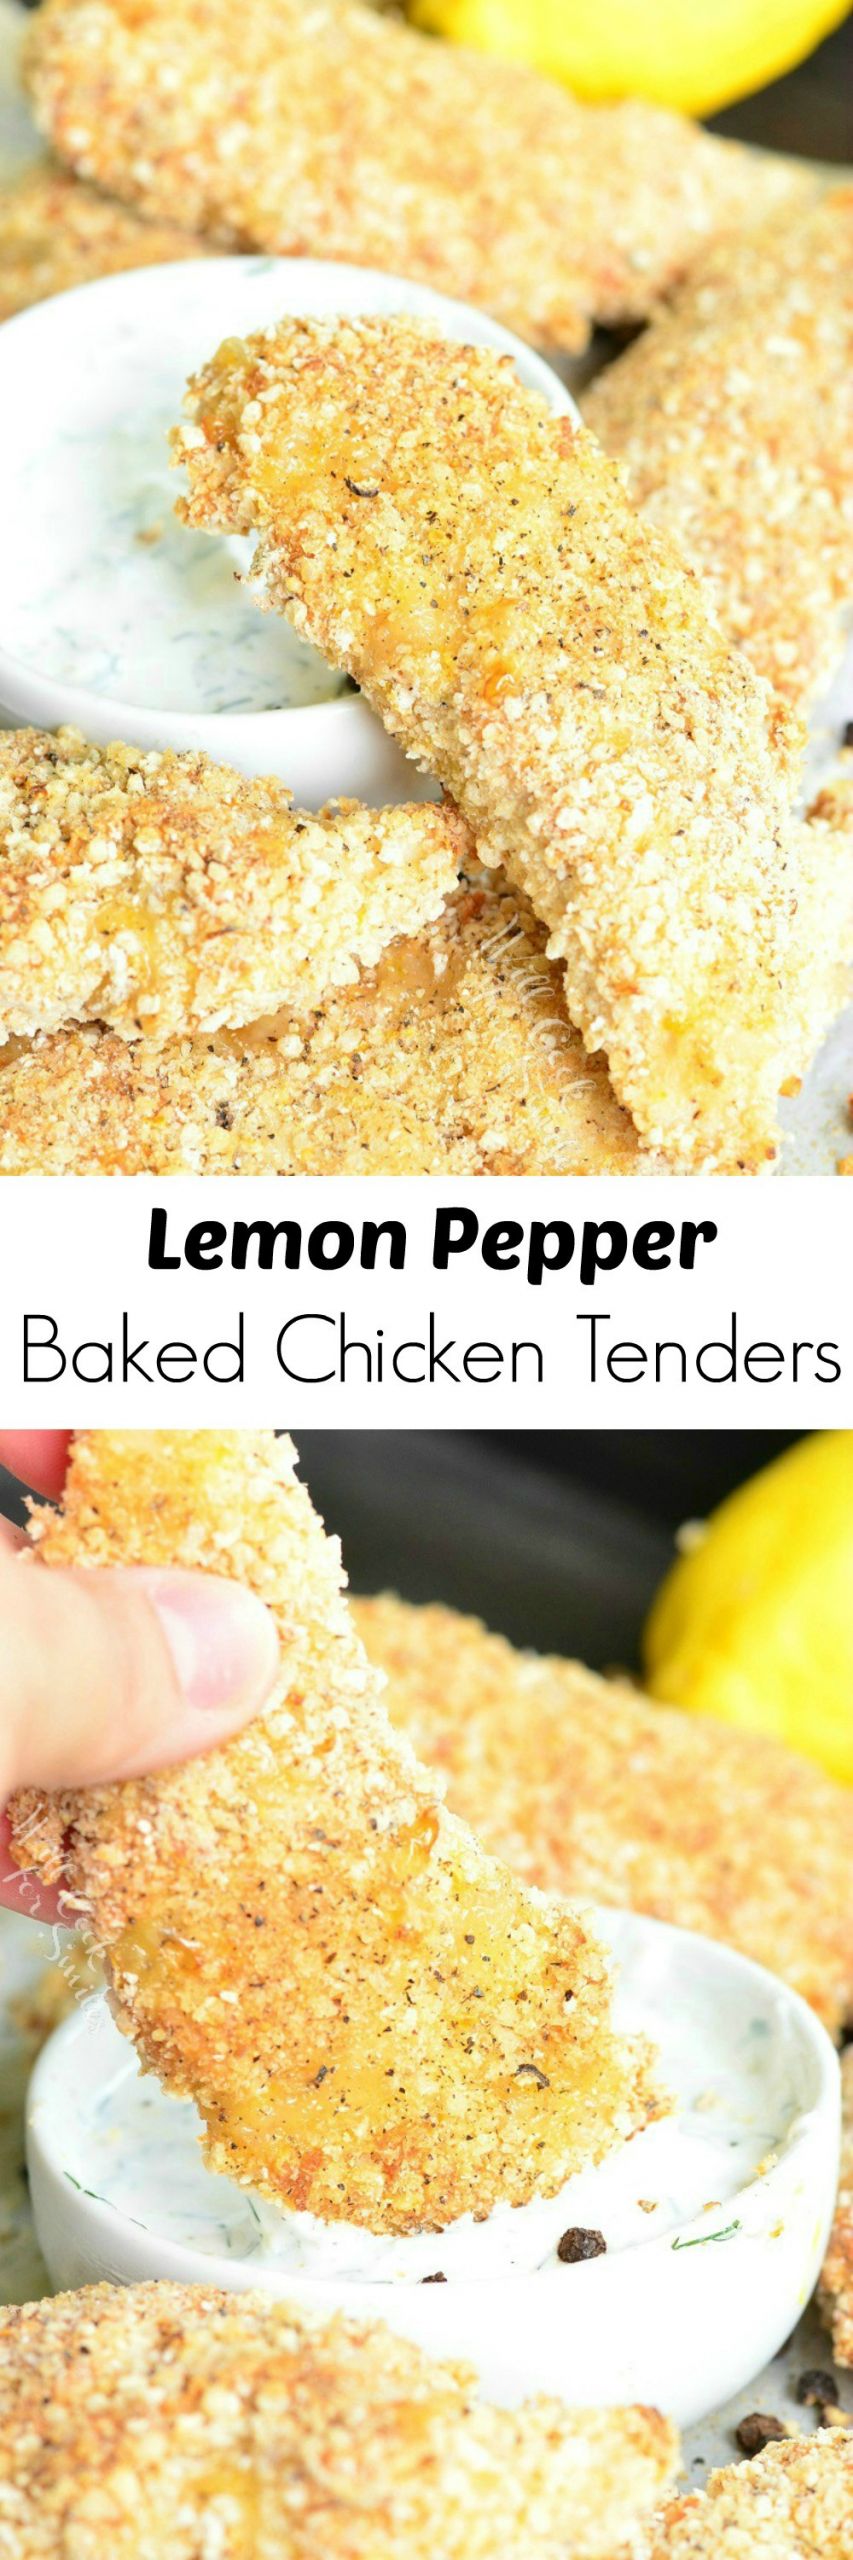 Gluten Free Baked Chicken Tenders
 Lemon Pepper Baked Chicken Tenders Gluten Free Recipe